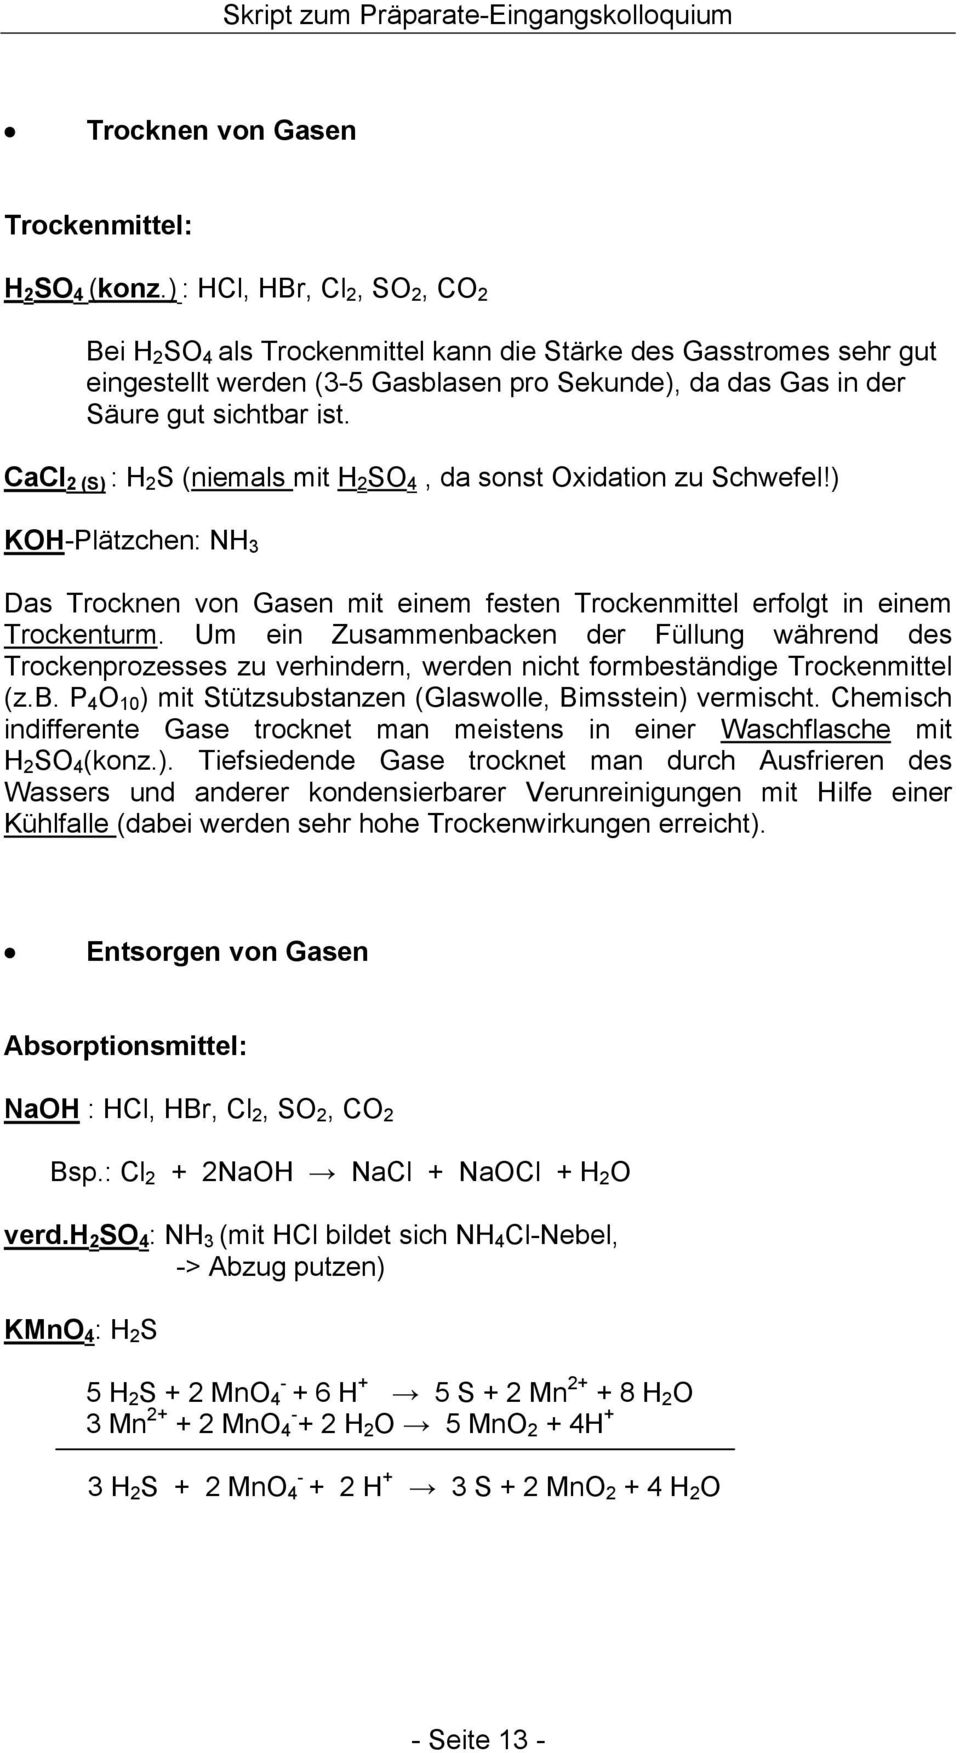 CaCl 2 (S) : H 2 S (niemals mit H 2 S 4, da sonst xidation zu Schwefel!) KH-Plätzchen: NH 3 Das Trocknen von Gasen mit einem festen Trockenmittel erfolgt in einem Trockenturm.